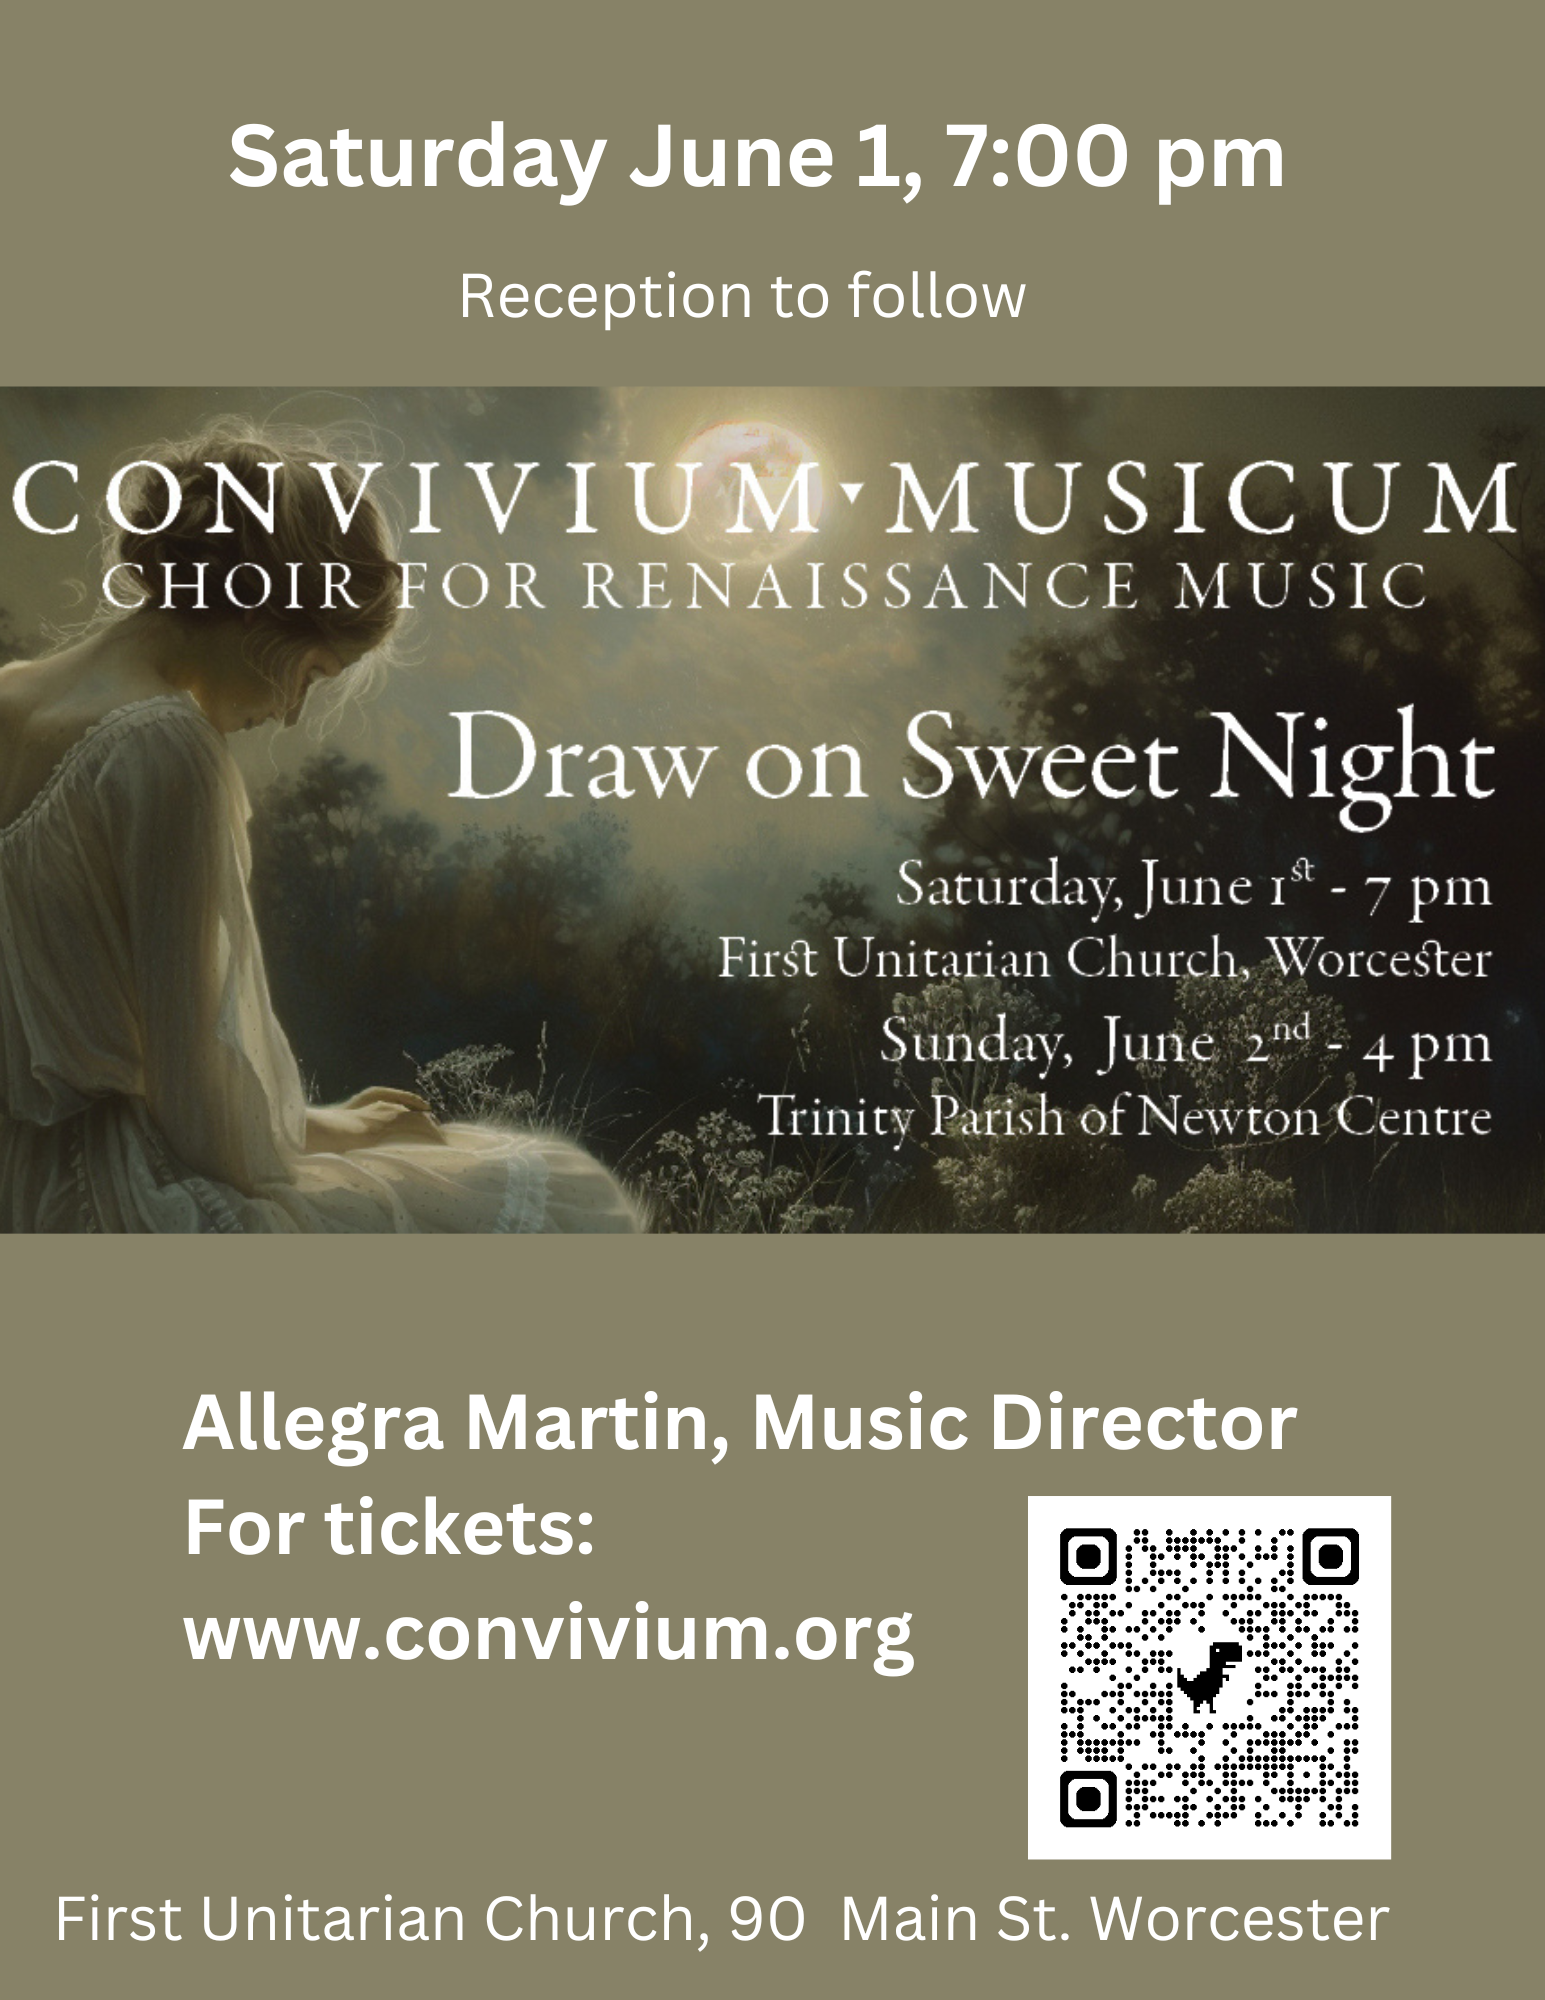 Convivium Musicum Concert